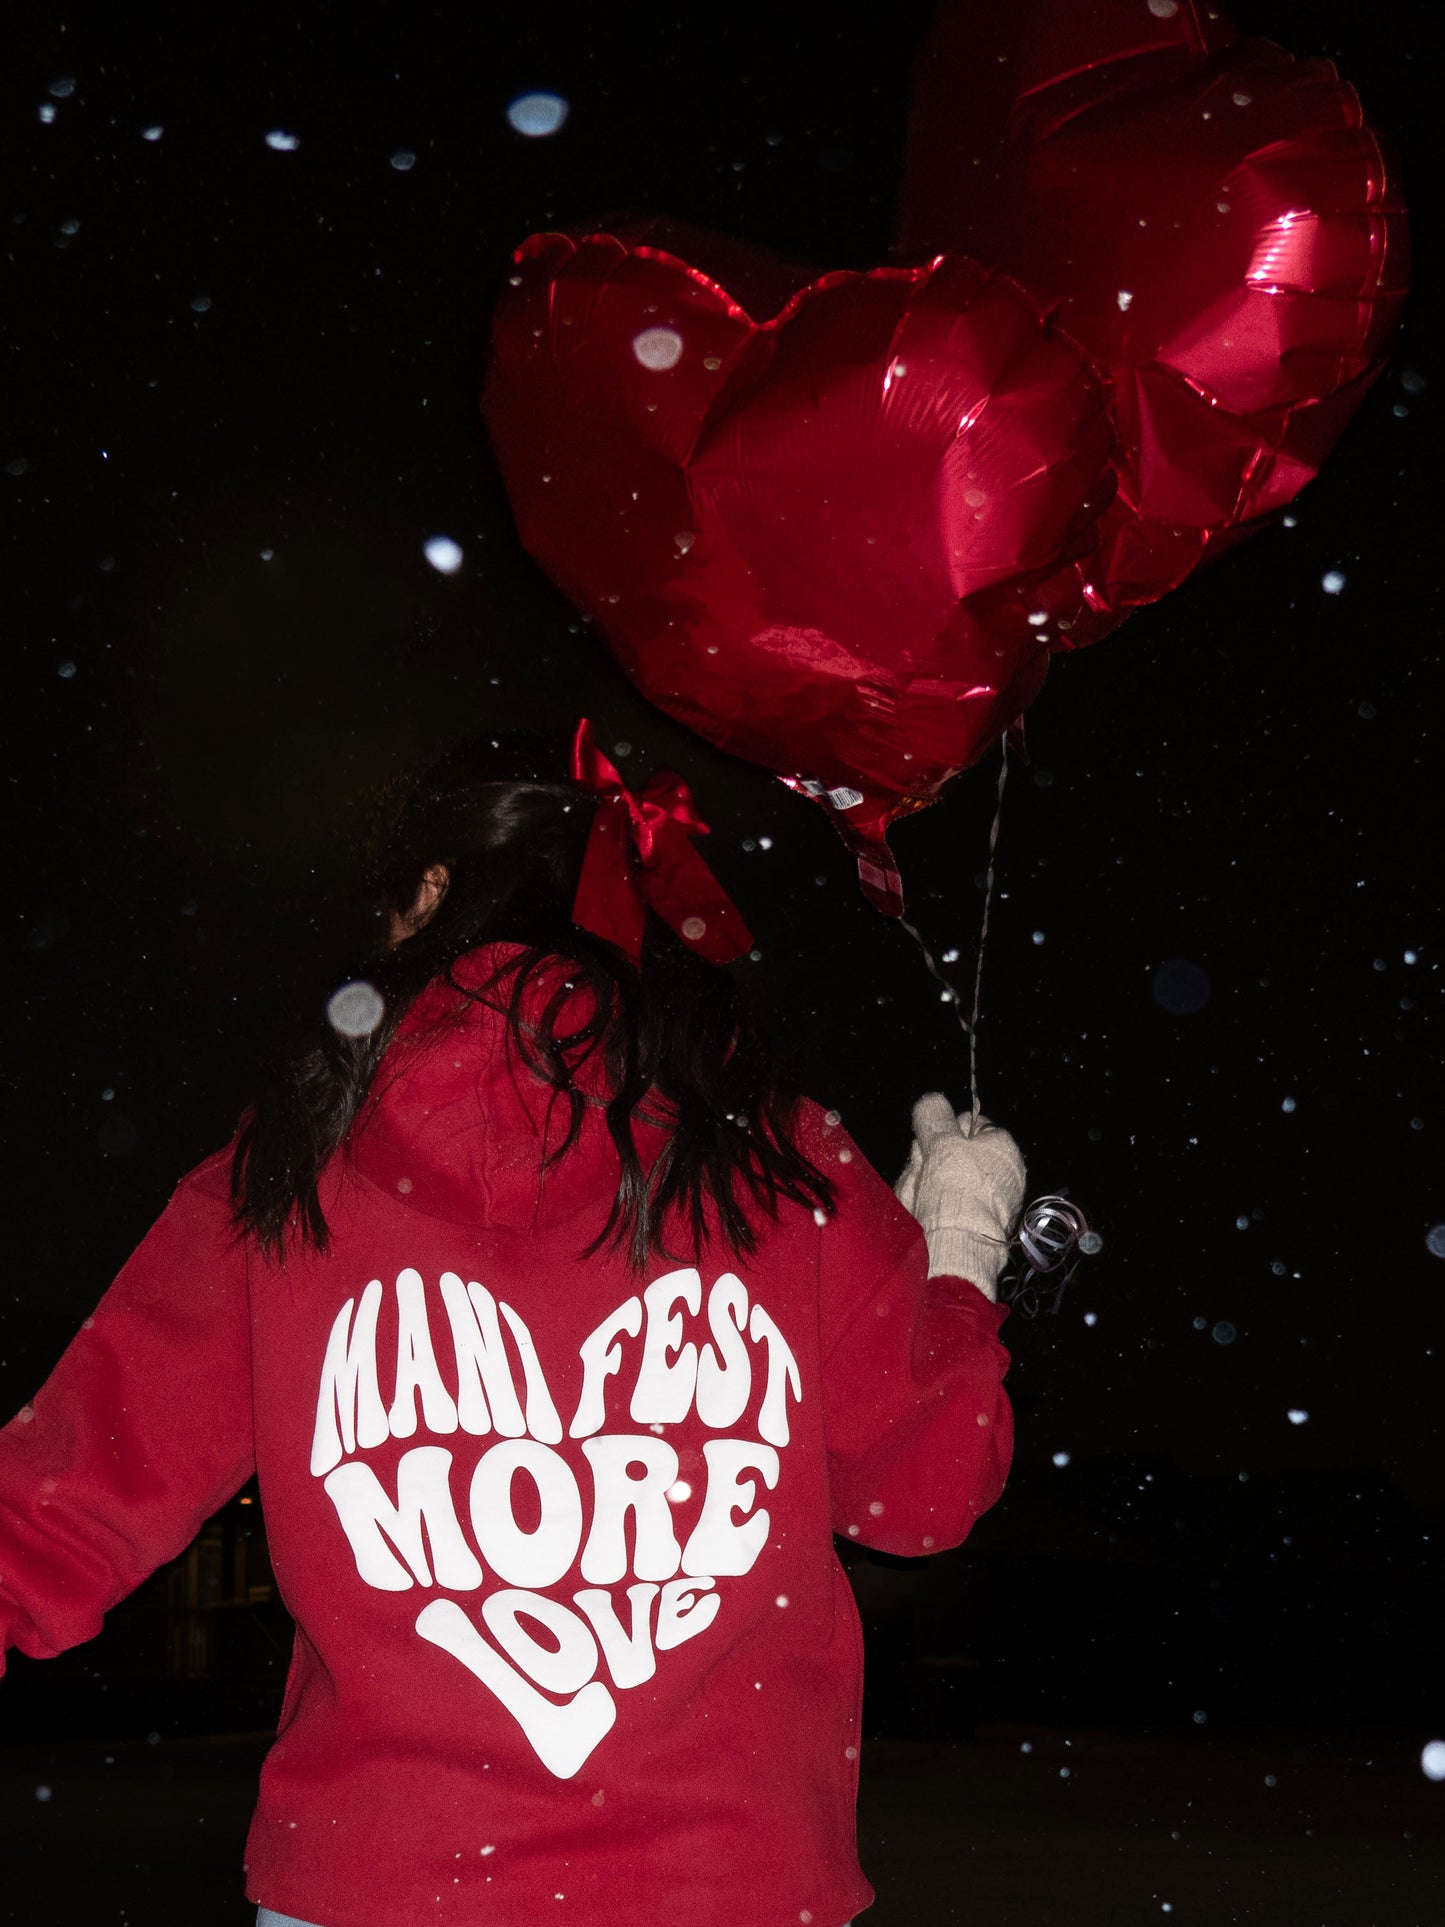 Manifest More Love Hoodie - Red